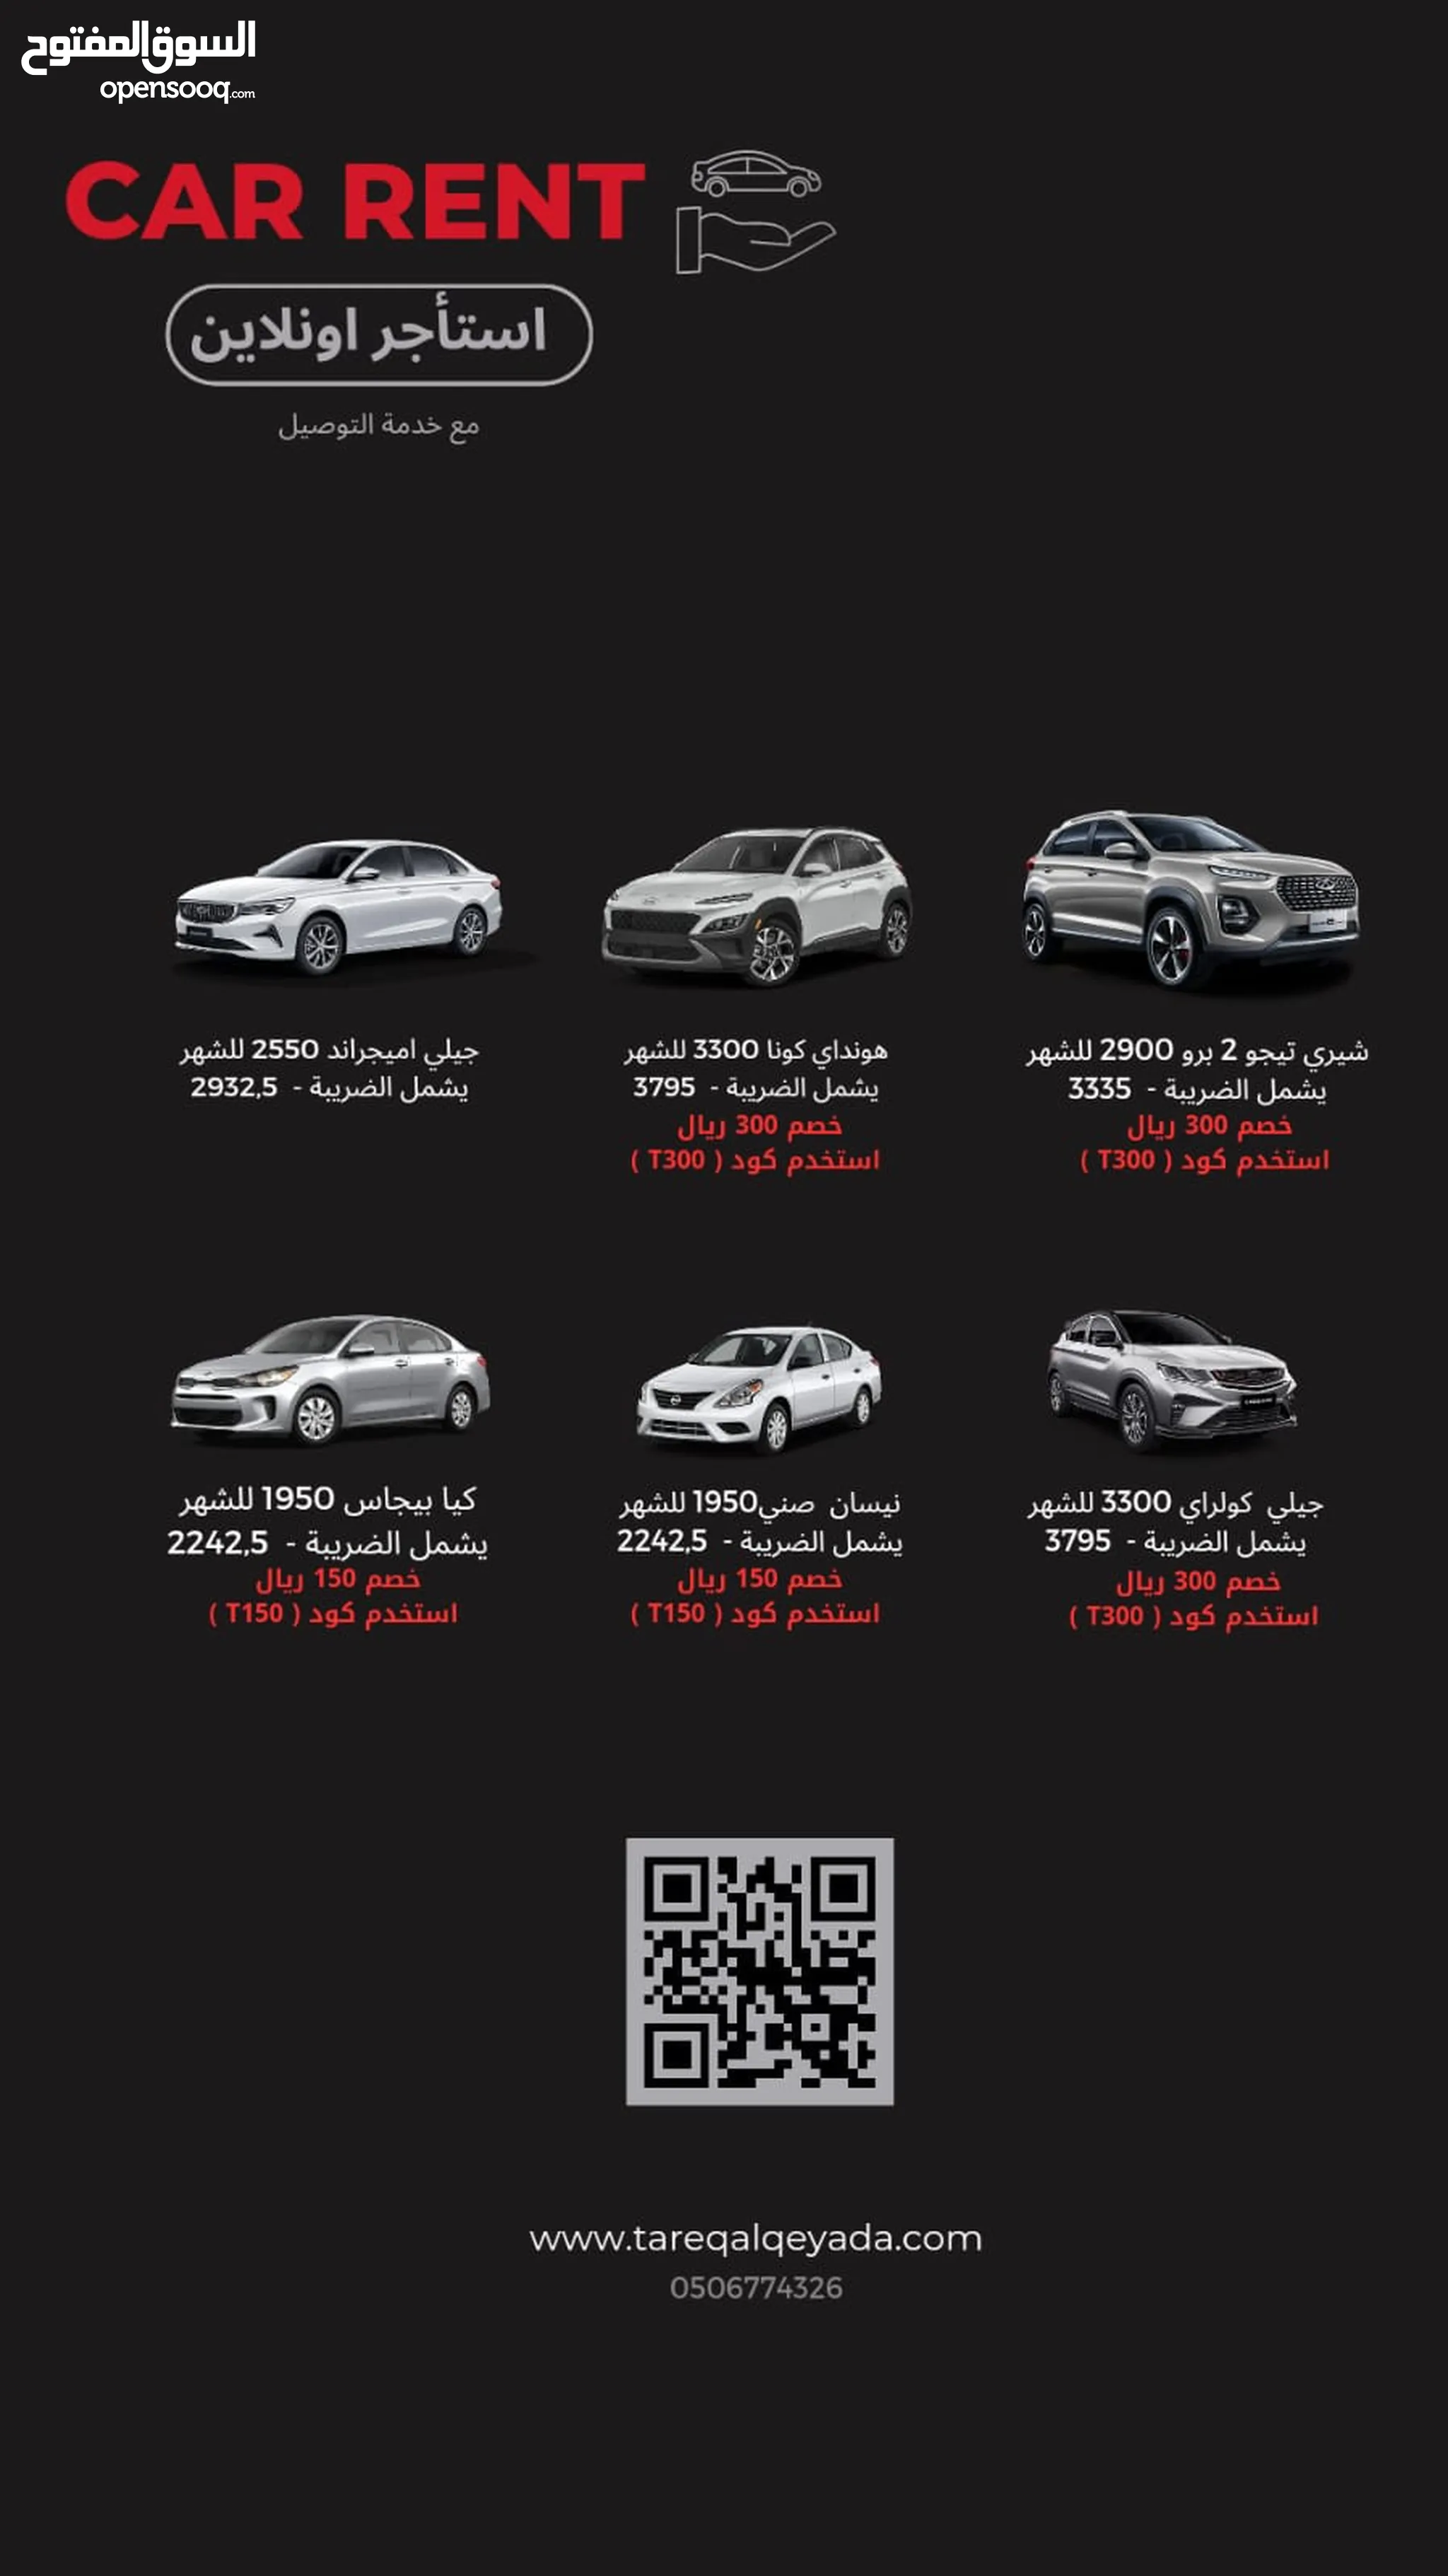 تأجير سيارات في السعودية : مكتب تأجير سيارات : ايجار : يومي, شهري : أفضل سعر